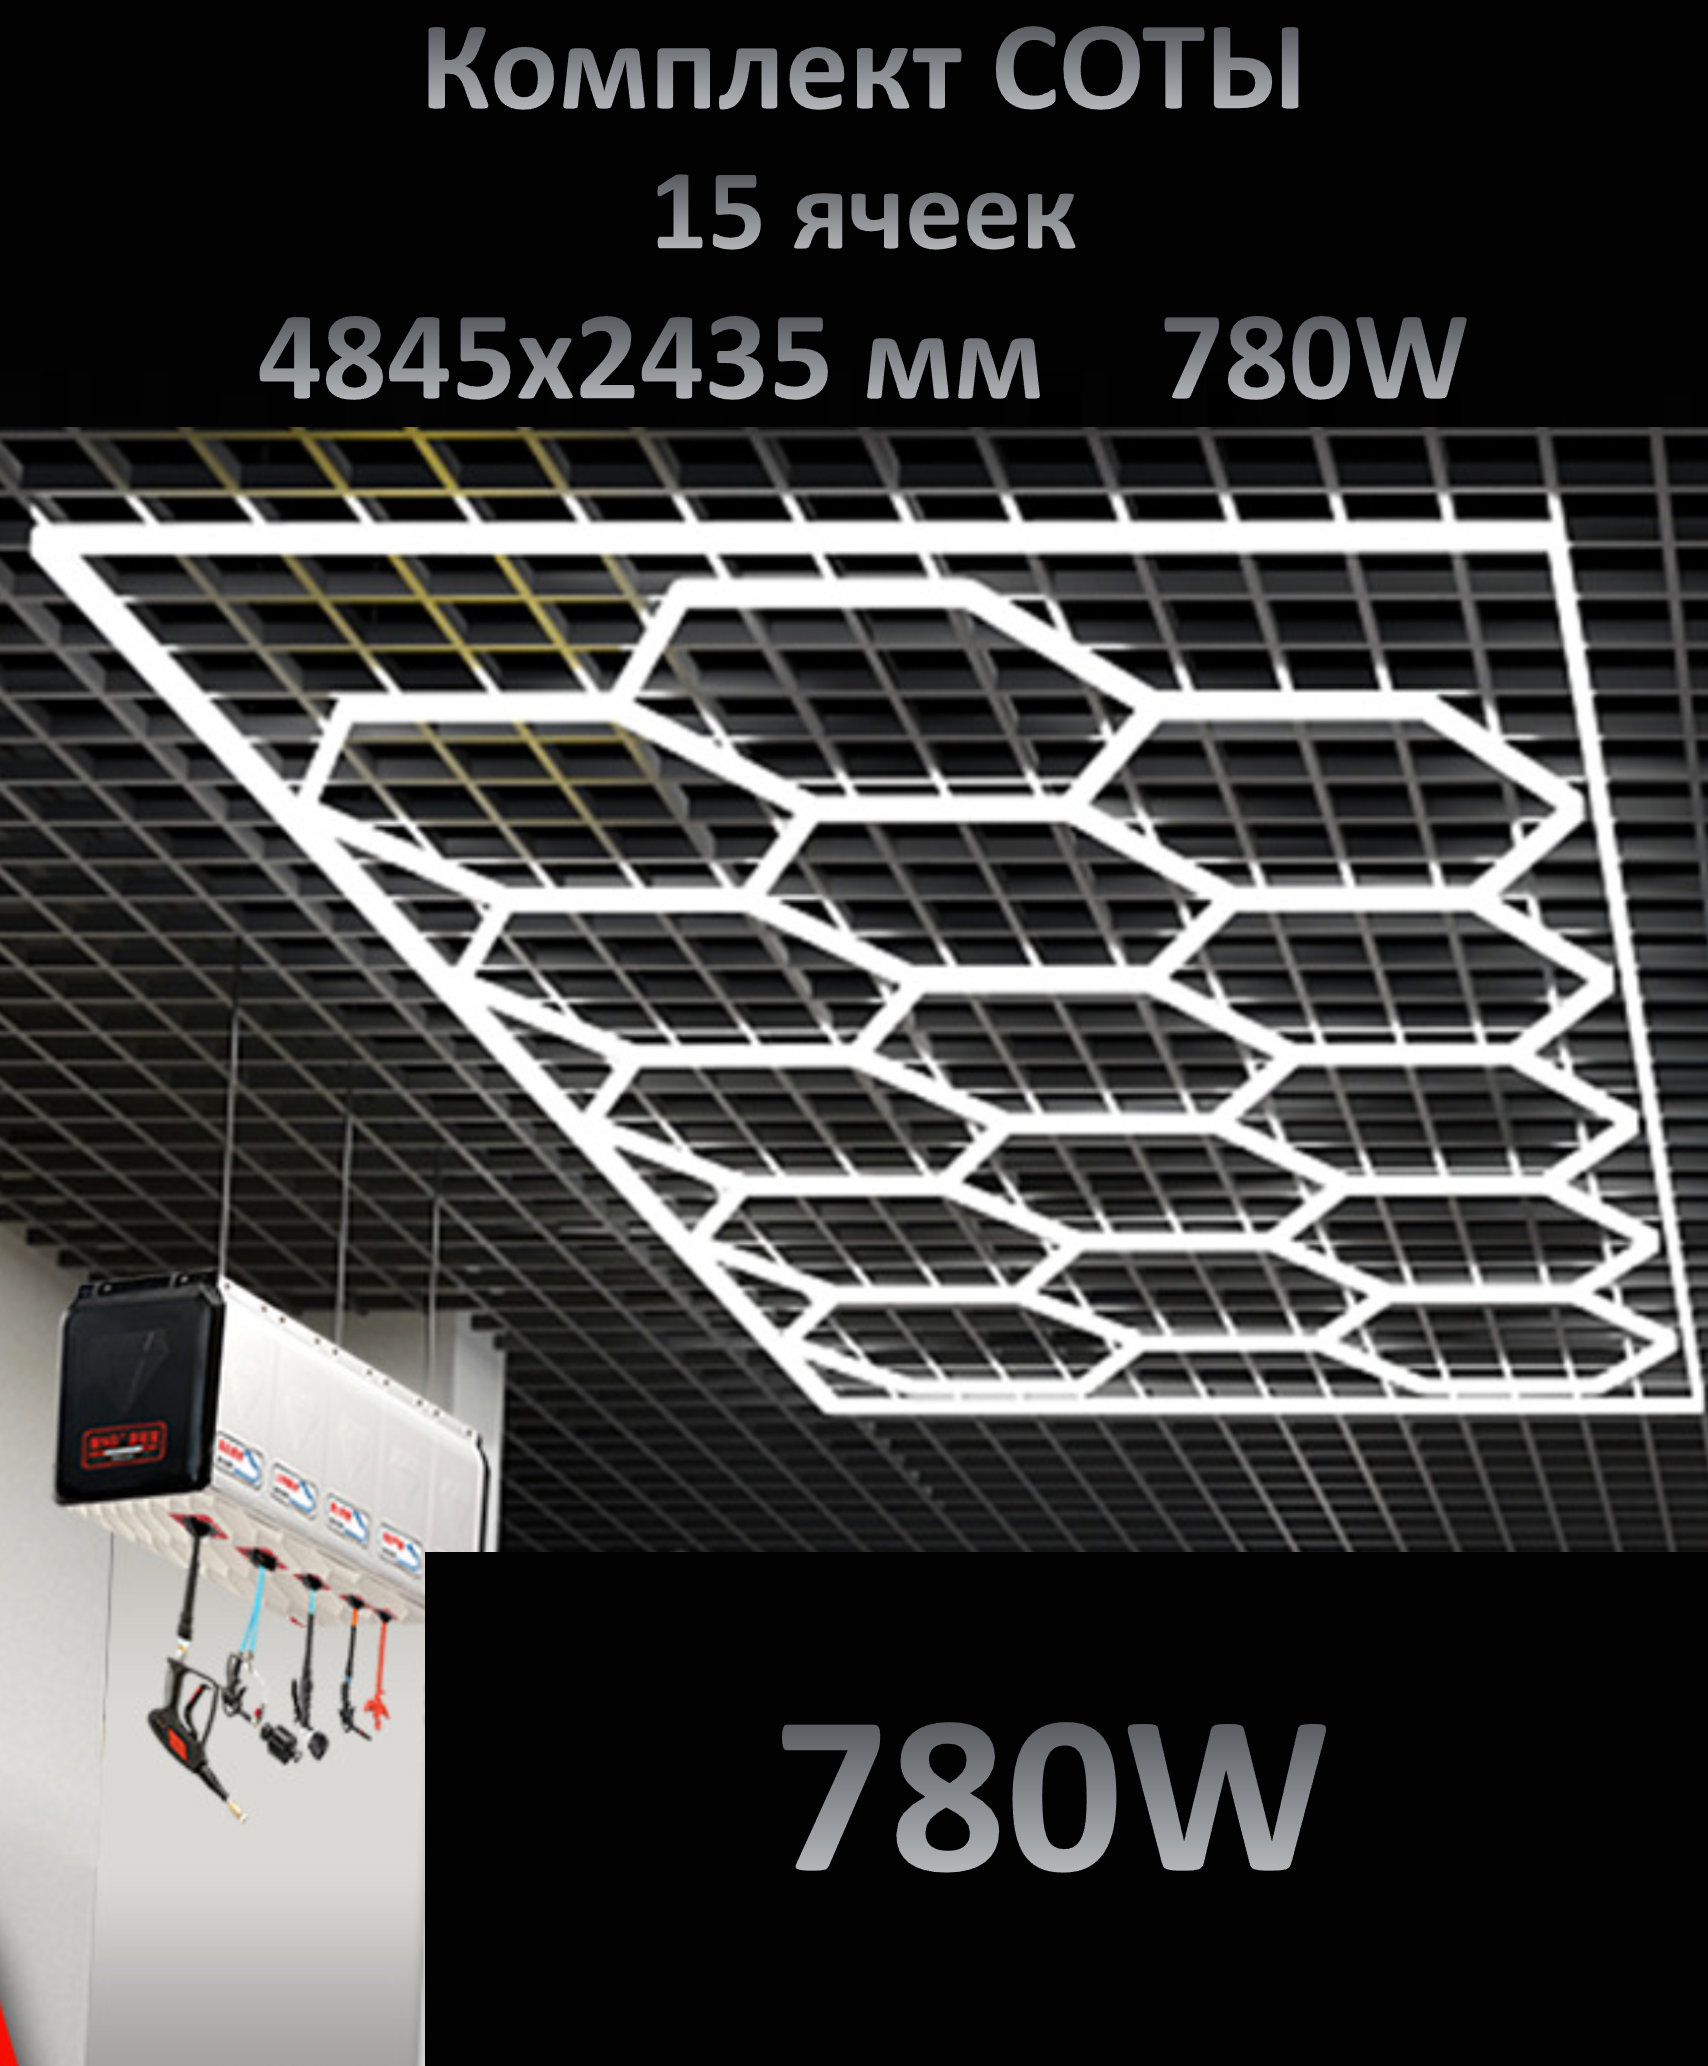 Комплект освещения "соты" 780 Вт от бренда I TREK, свет в гараж, модульное освещение в детейлинг, размеры 2,435х4,845 м